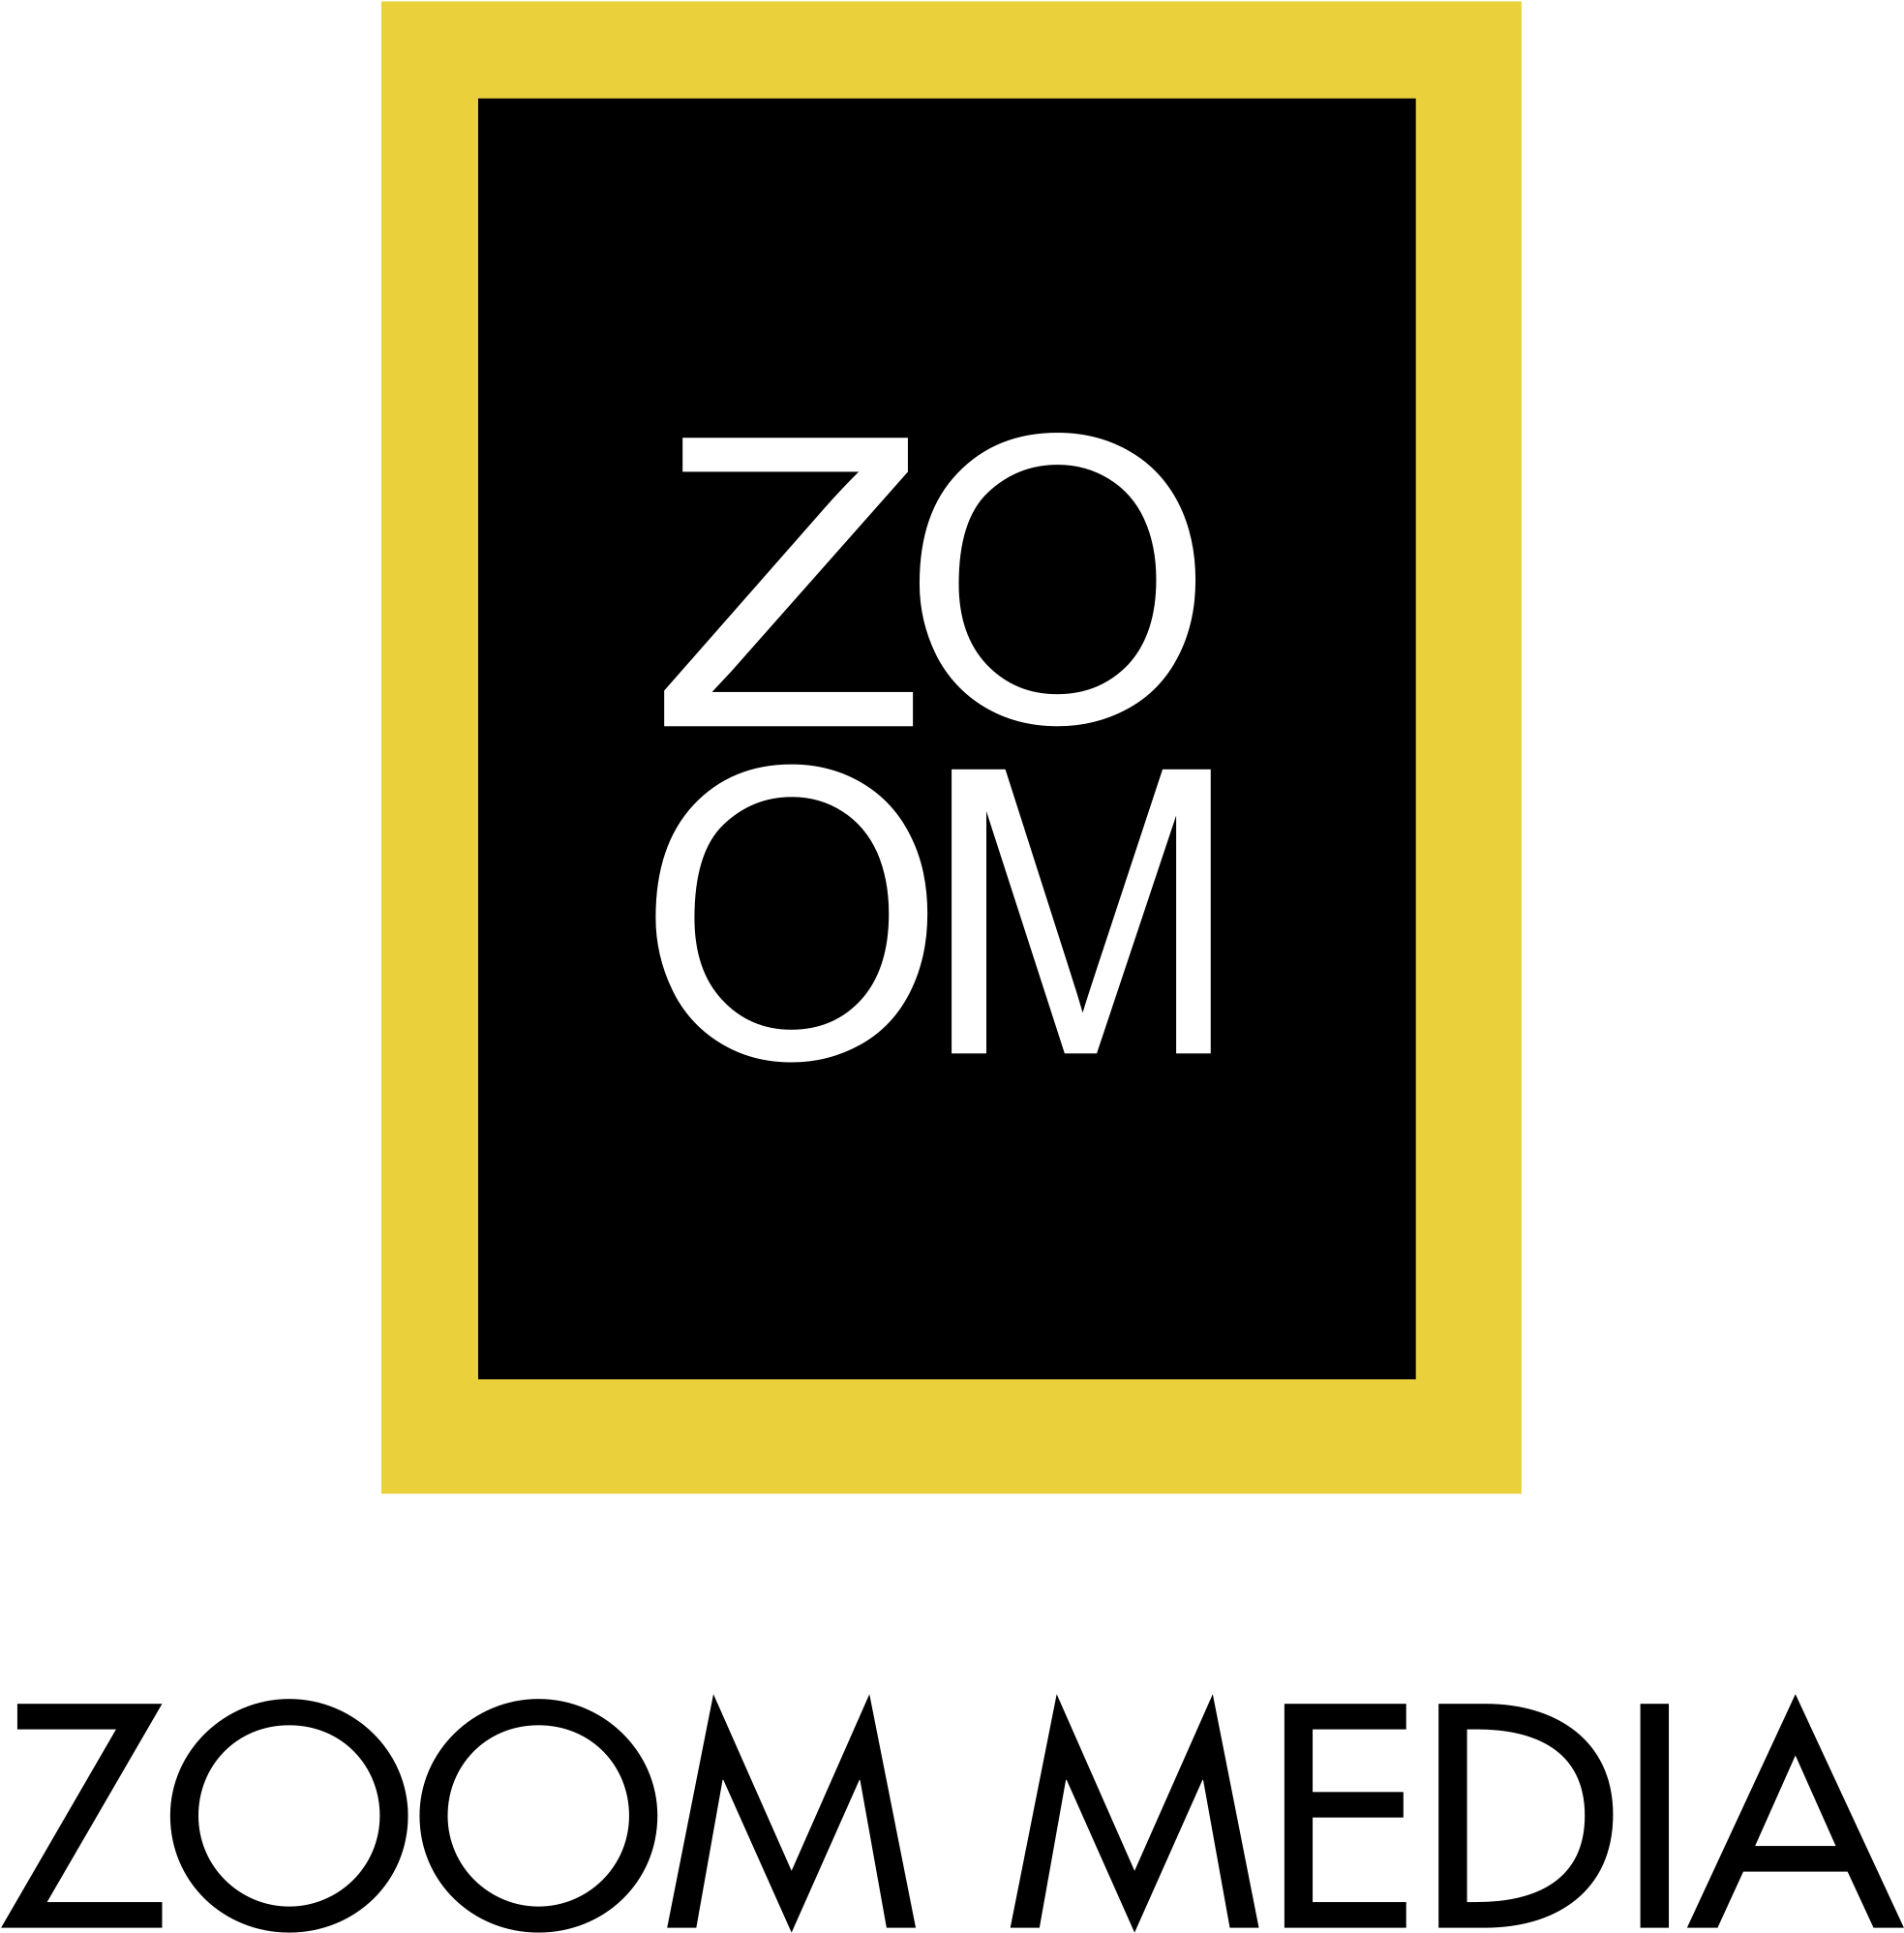 Zoom Media Logo Png Transparent - Zoom Media (2400x2400), Png Download